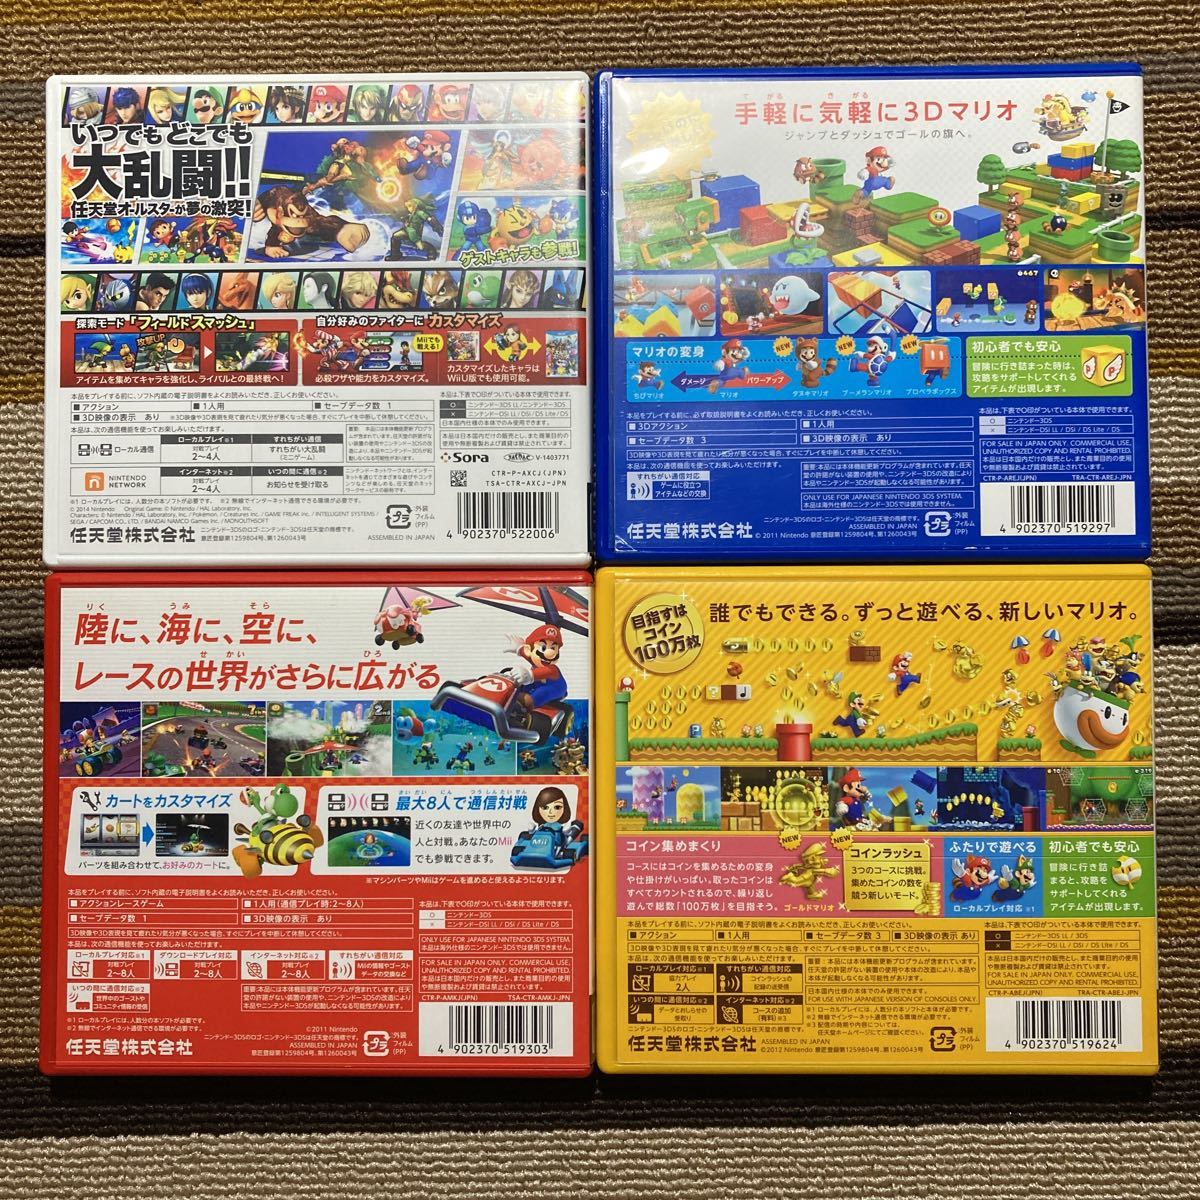 3DS 大乱闘スマッシュブラザーズ スーパーマリオ3Dランド スーパーマリオブラザーズ2 マリオカート7 